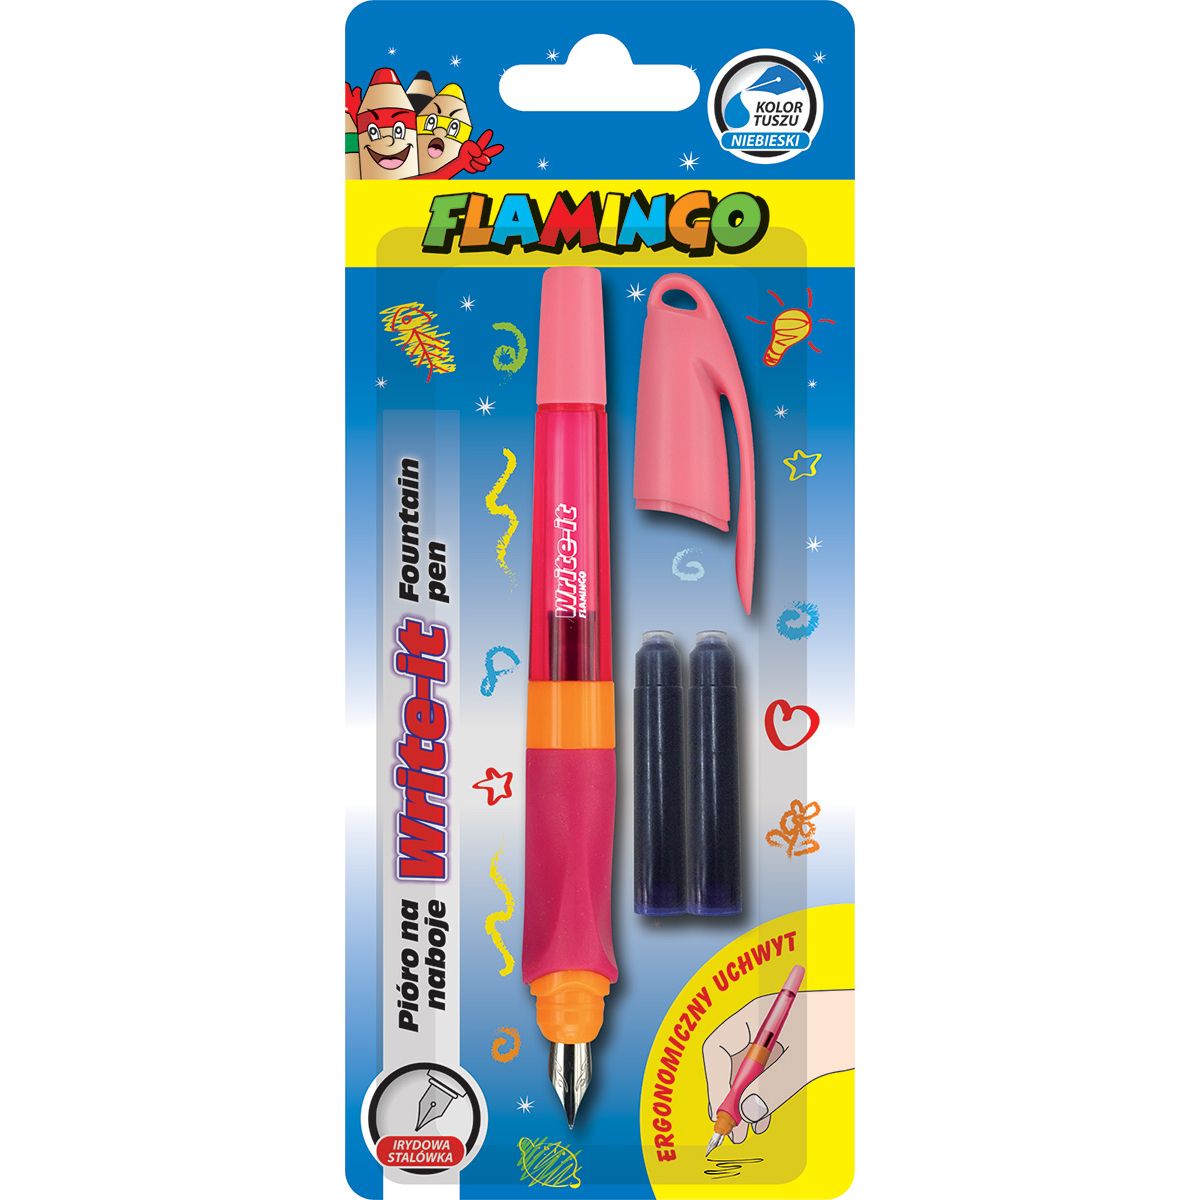 Pióro na naboje Write-it Flamingo różowe + 2 naboje